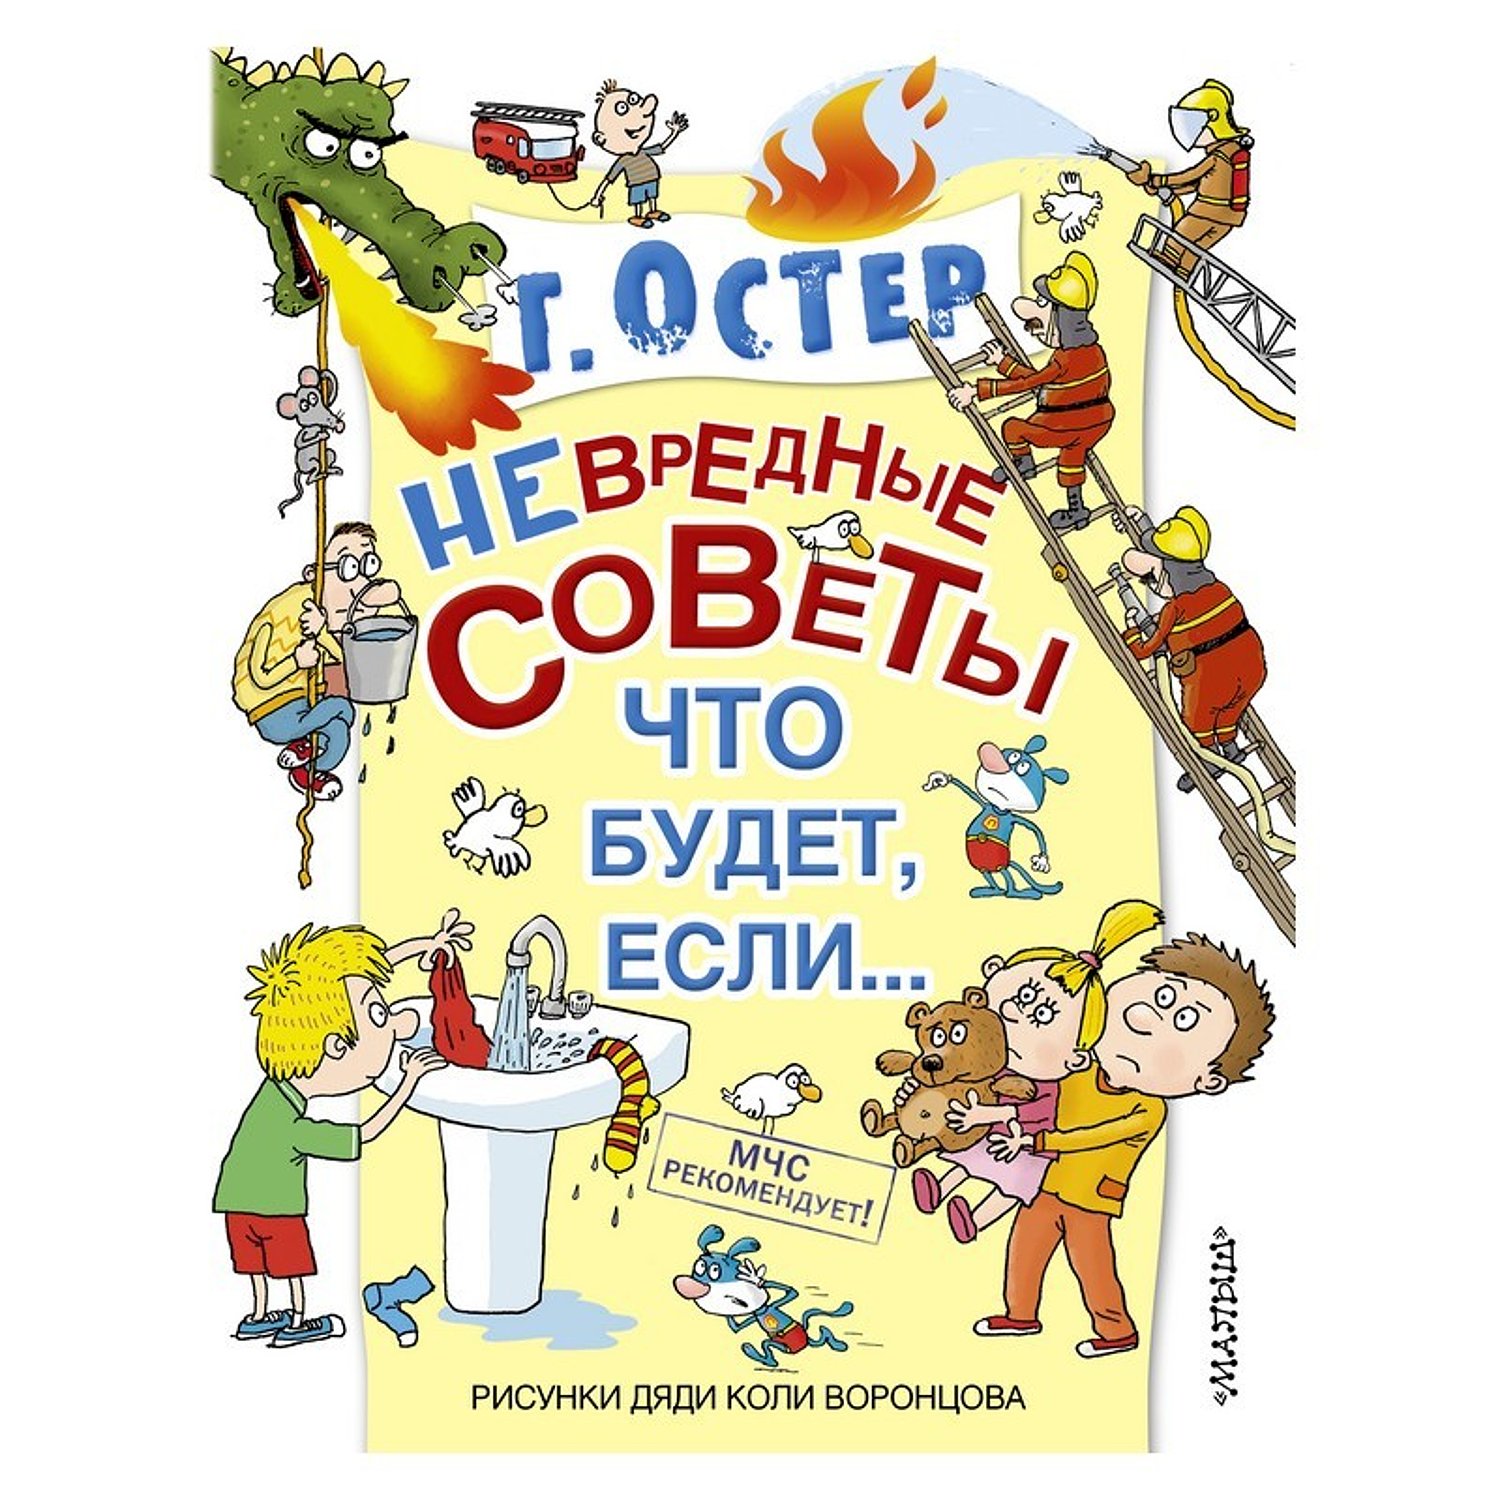 Книги Остера для детей